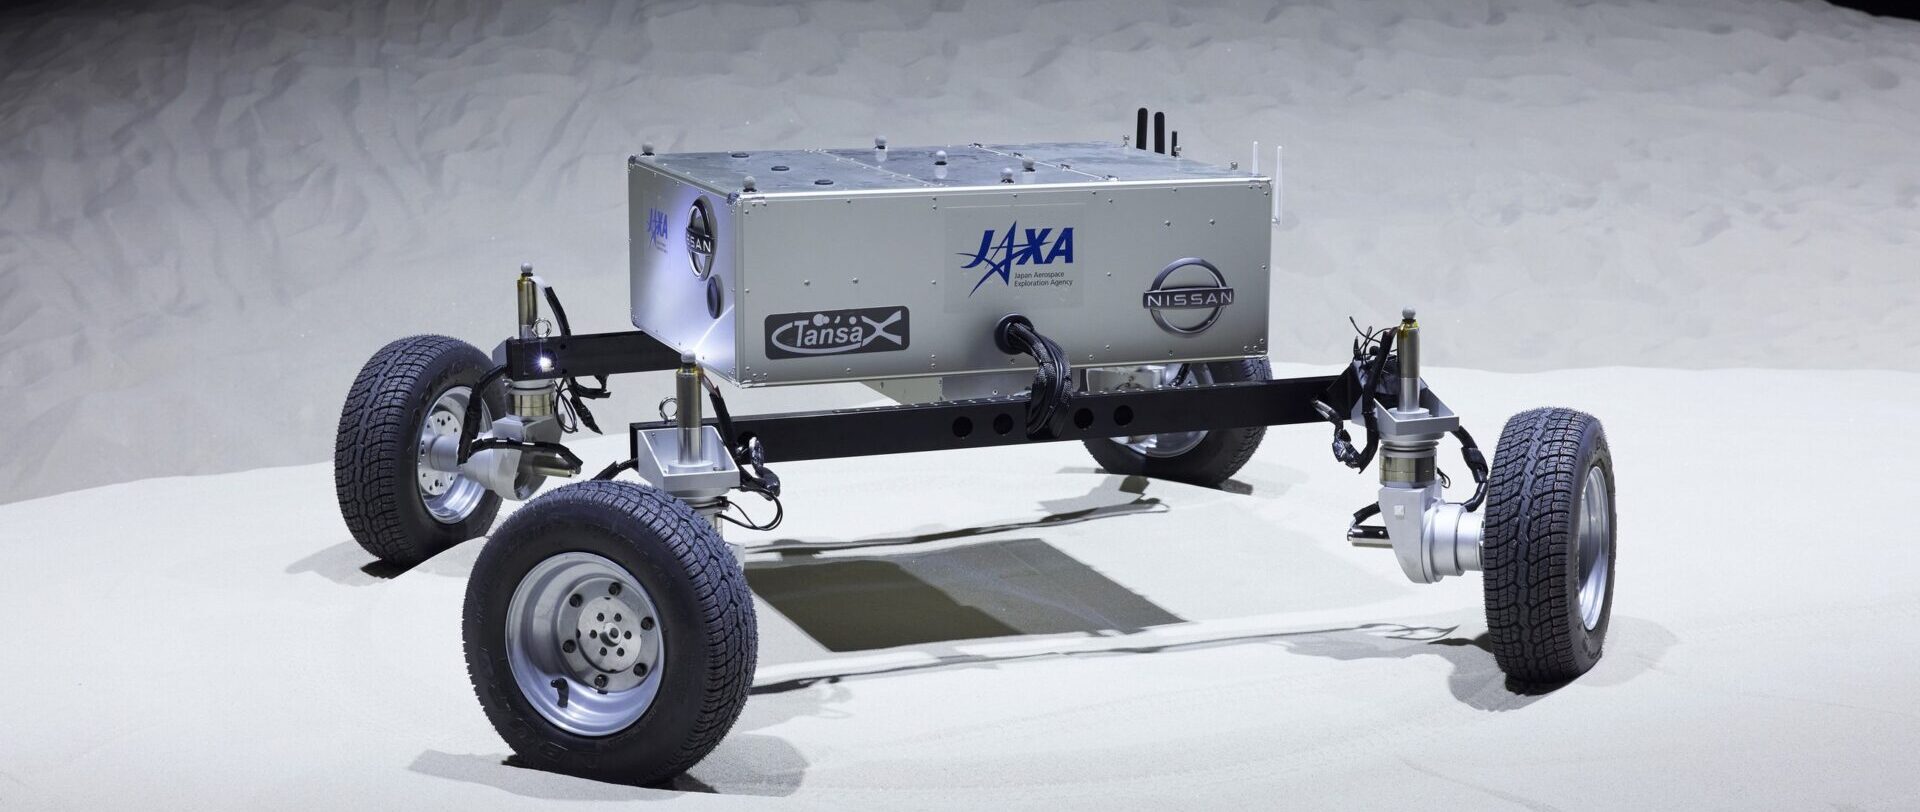 3 апреля НАСА скажет, кто создаст луноход для миссии «Артемида» с возможностью экипажа